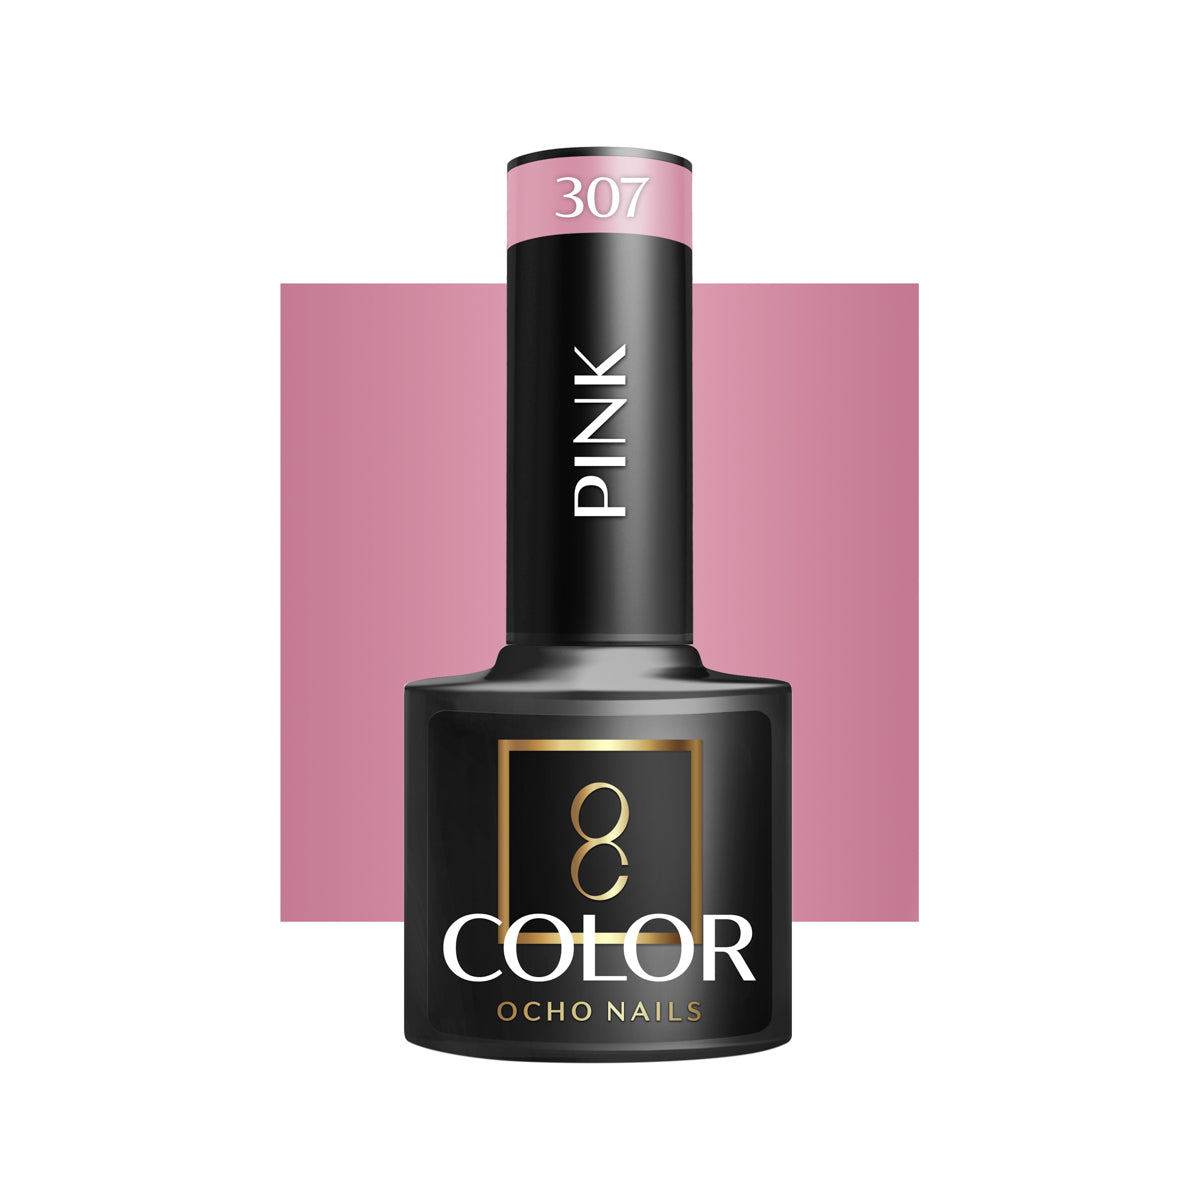 OCHO NAILS Hybride nagellak roze 307 -5 g